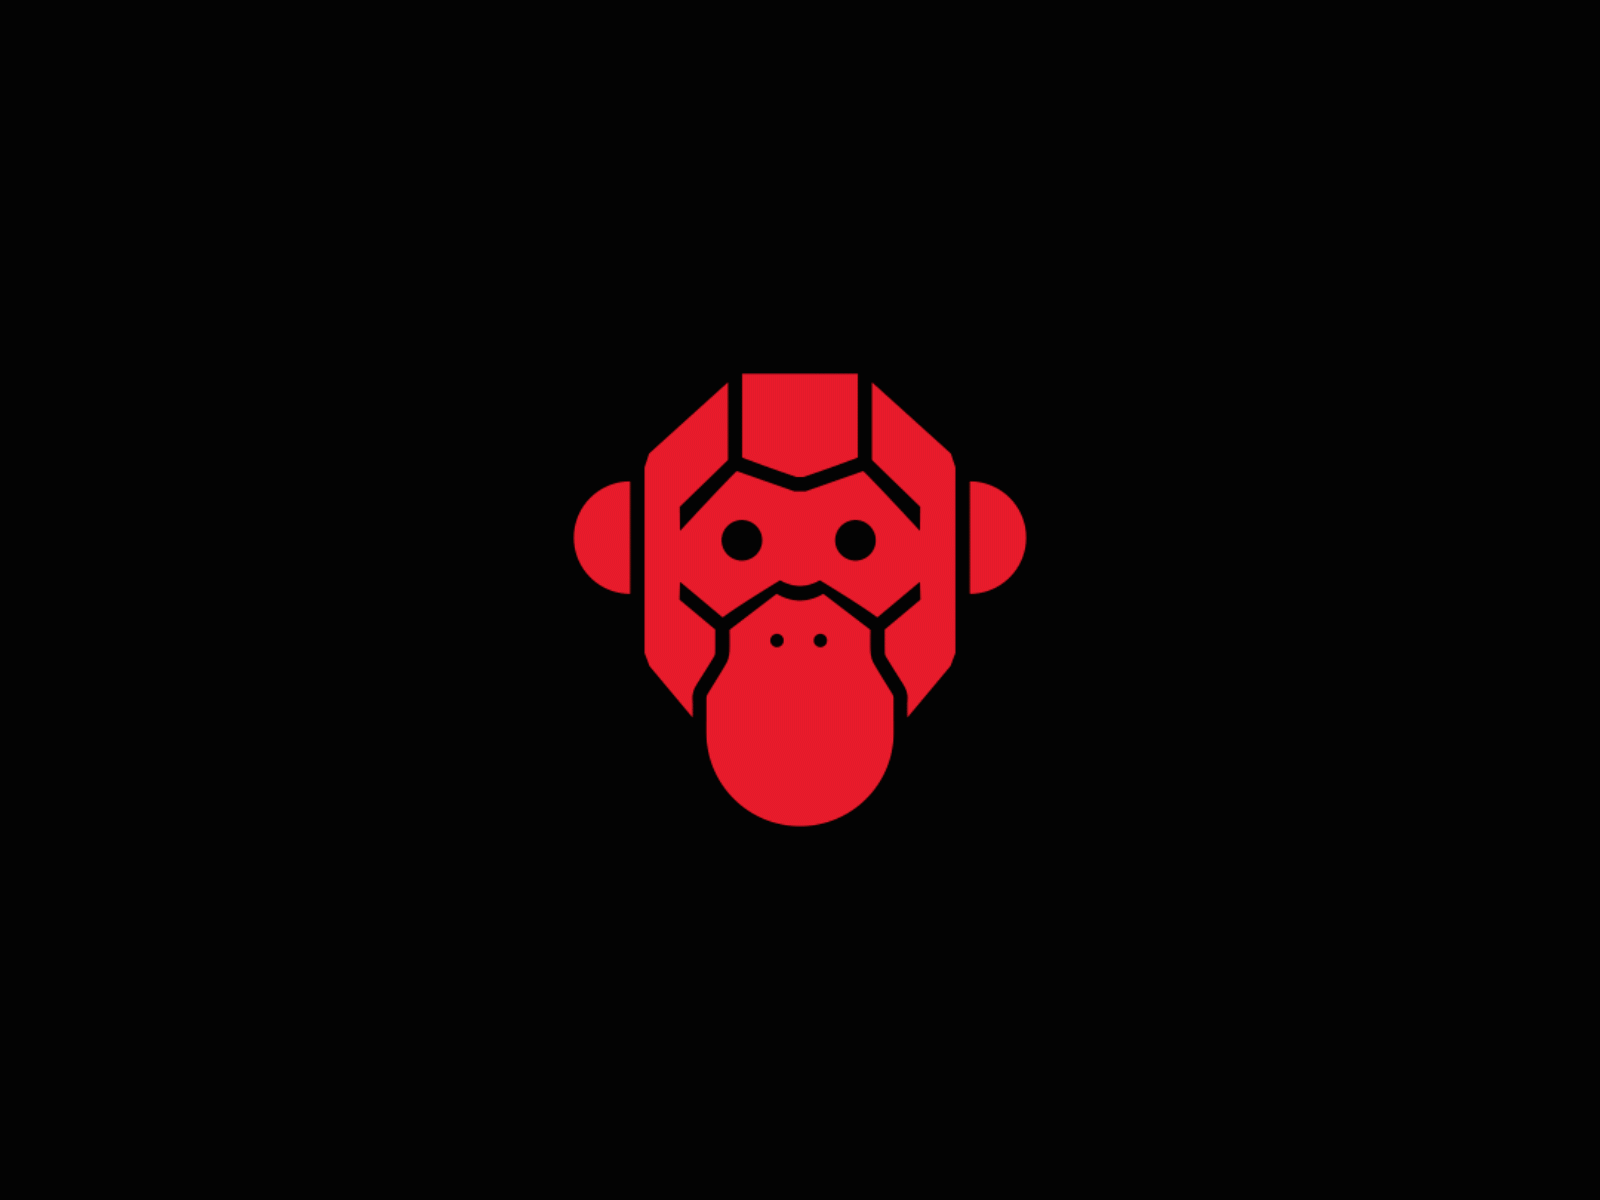 Red Monkey branding identity logo motion